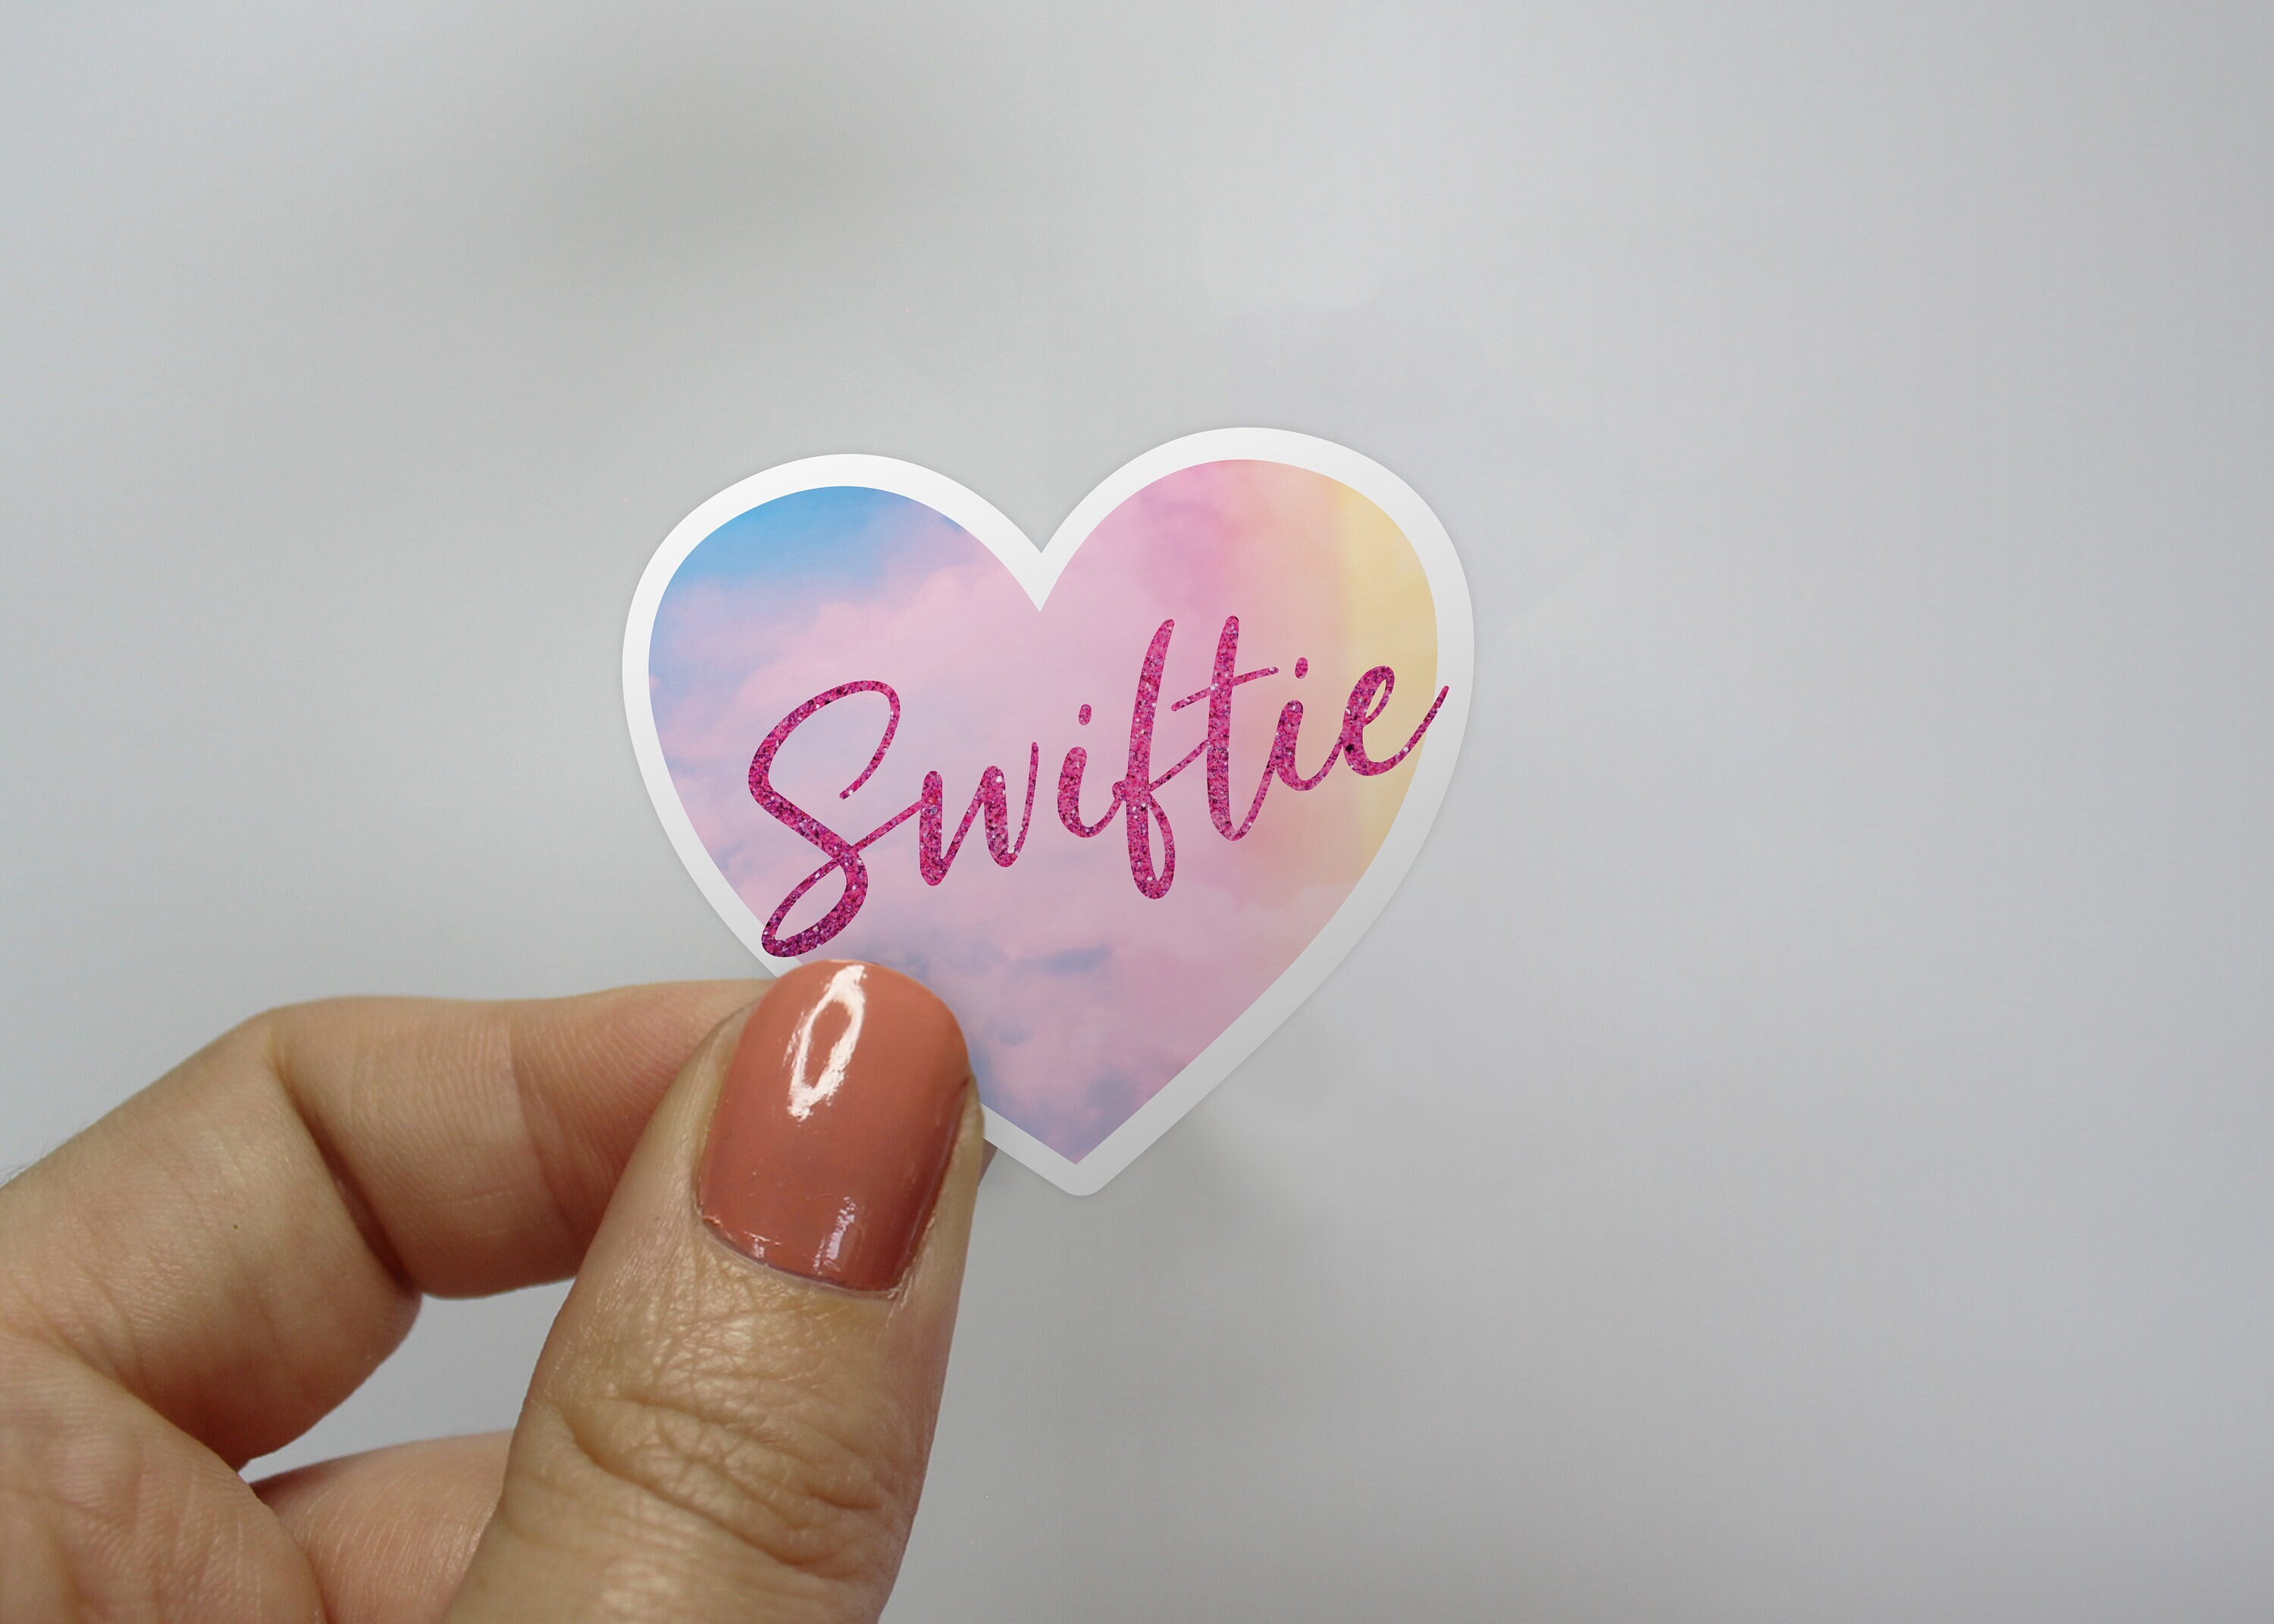 Taylor Swift Swiftie Sticker – PurpleAspen